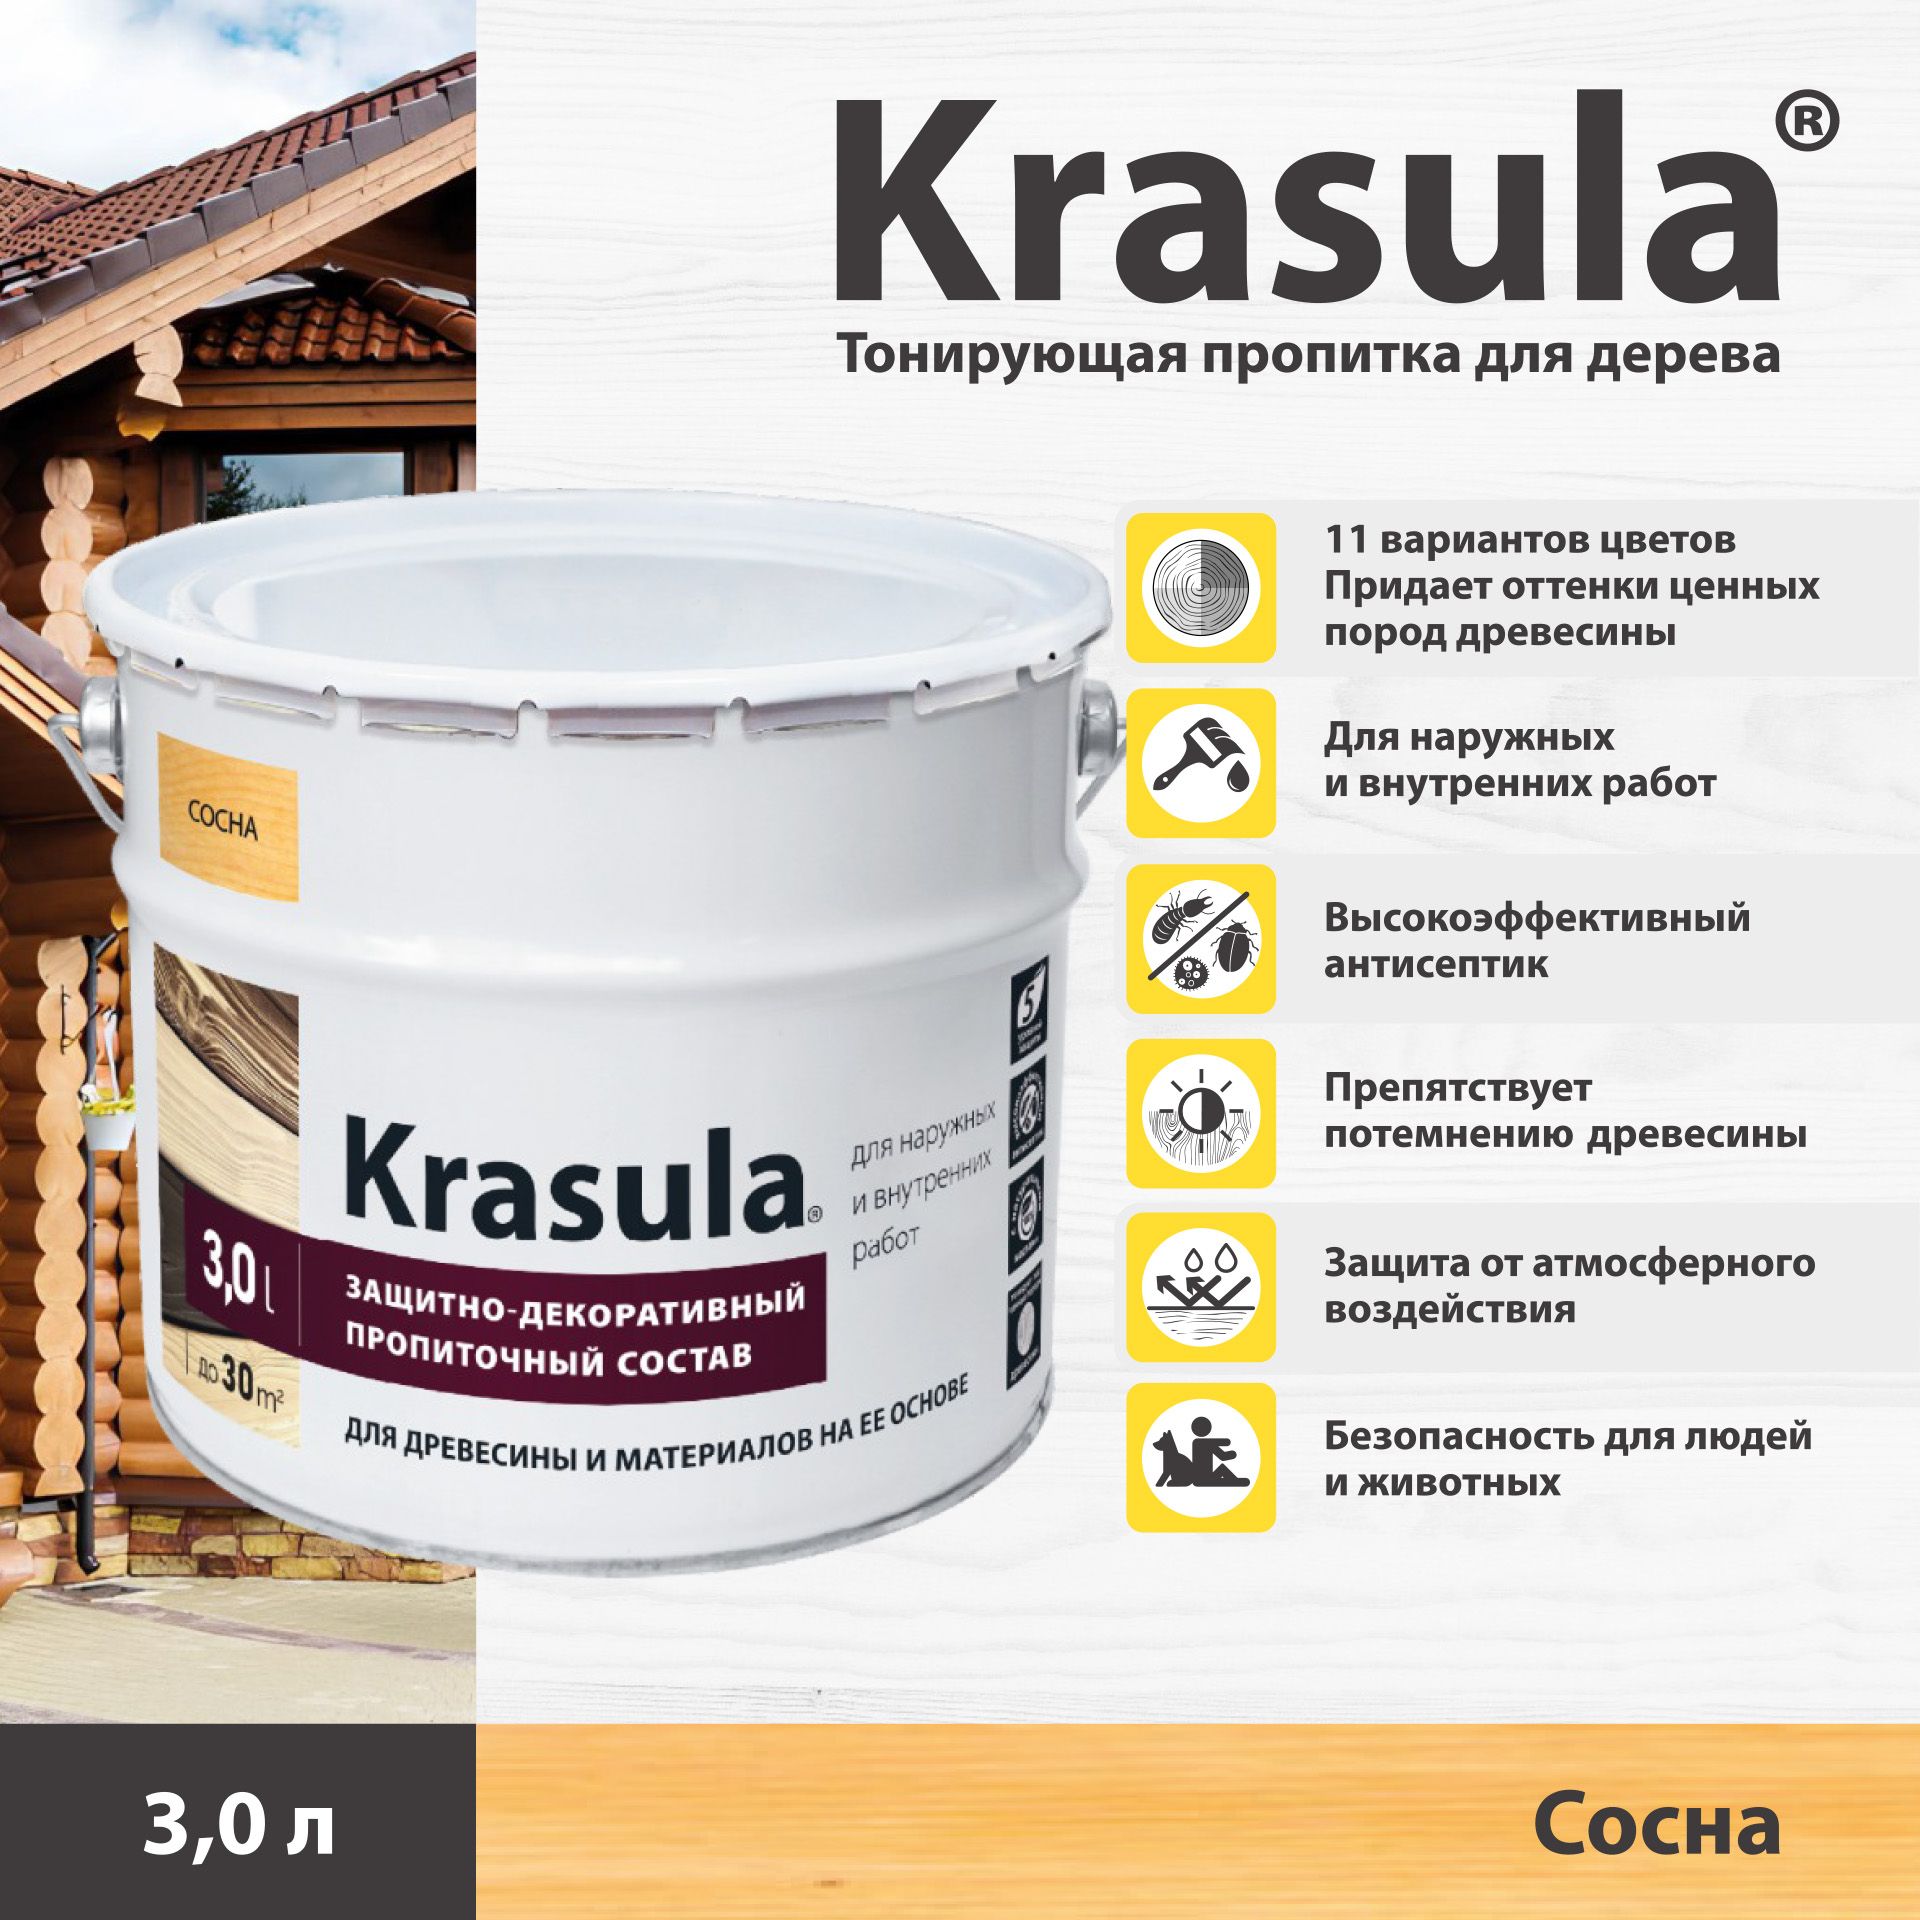 ТонирующаяпропиткадлядереваKrasula/3л/Сосна,защитно-декоративныйсоставдлядревесиныКрасула